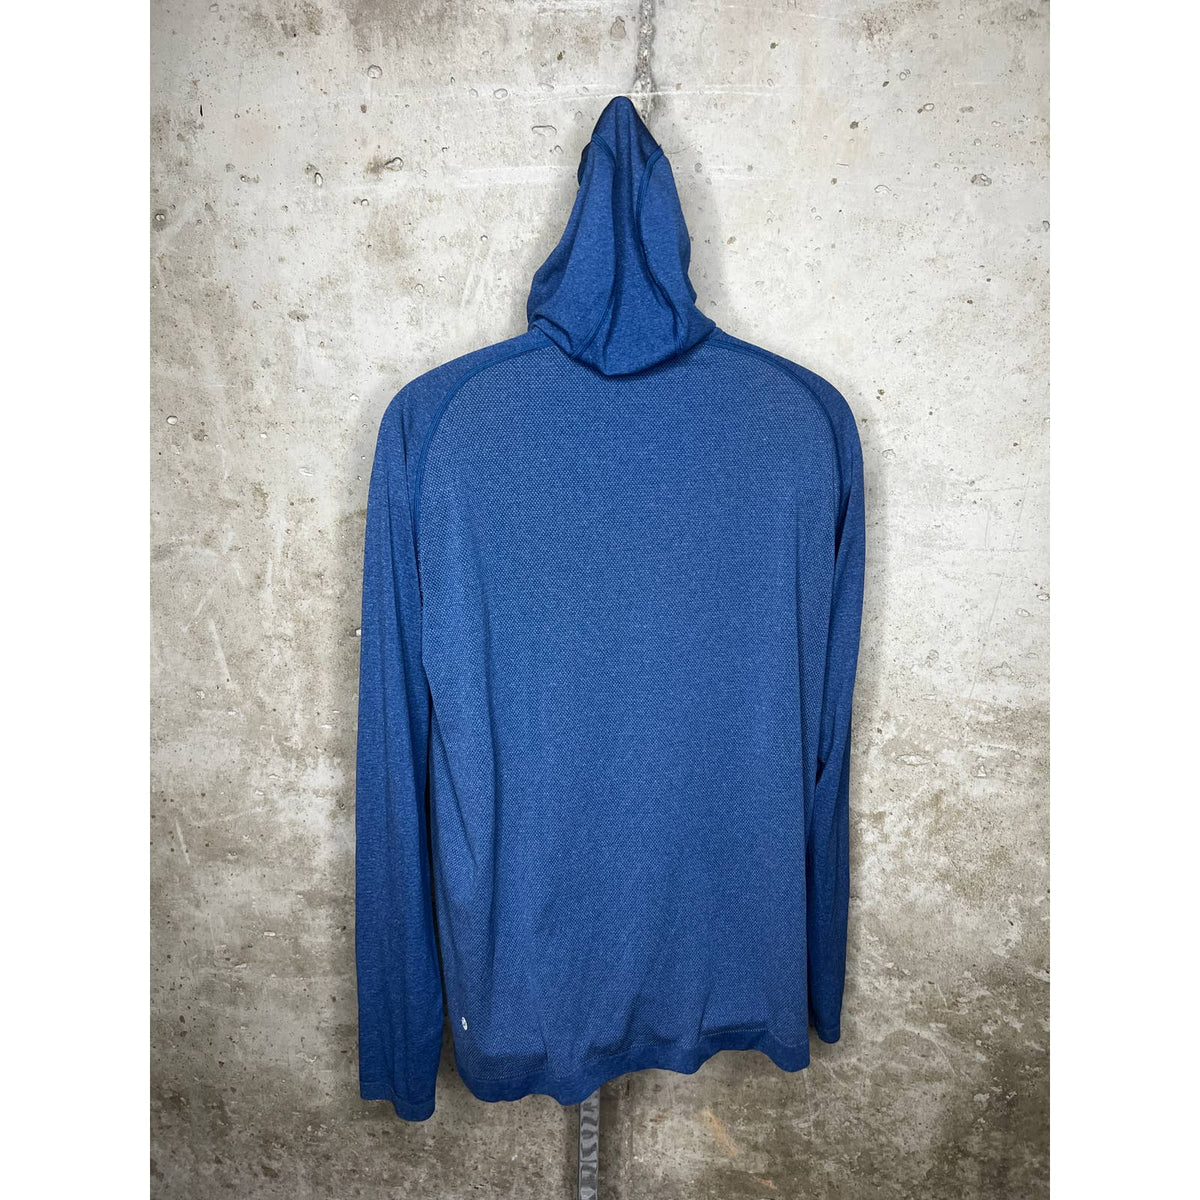 Lululemon Blue Mens Pullover Hoodie Sz.XL